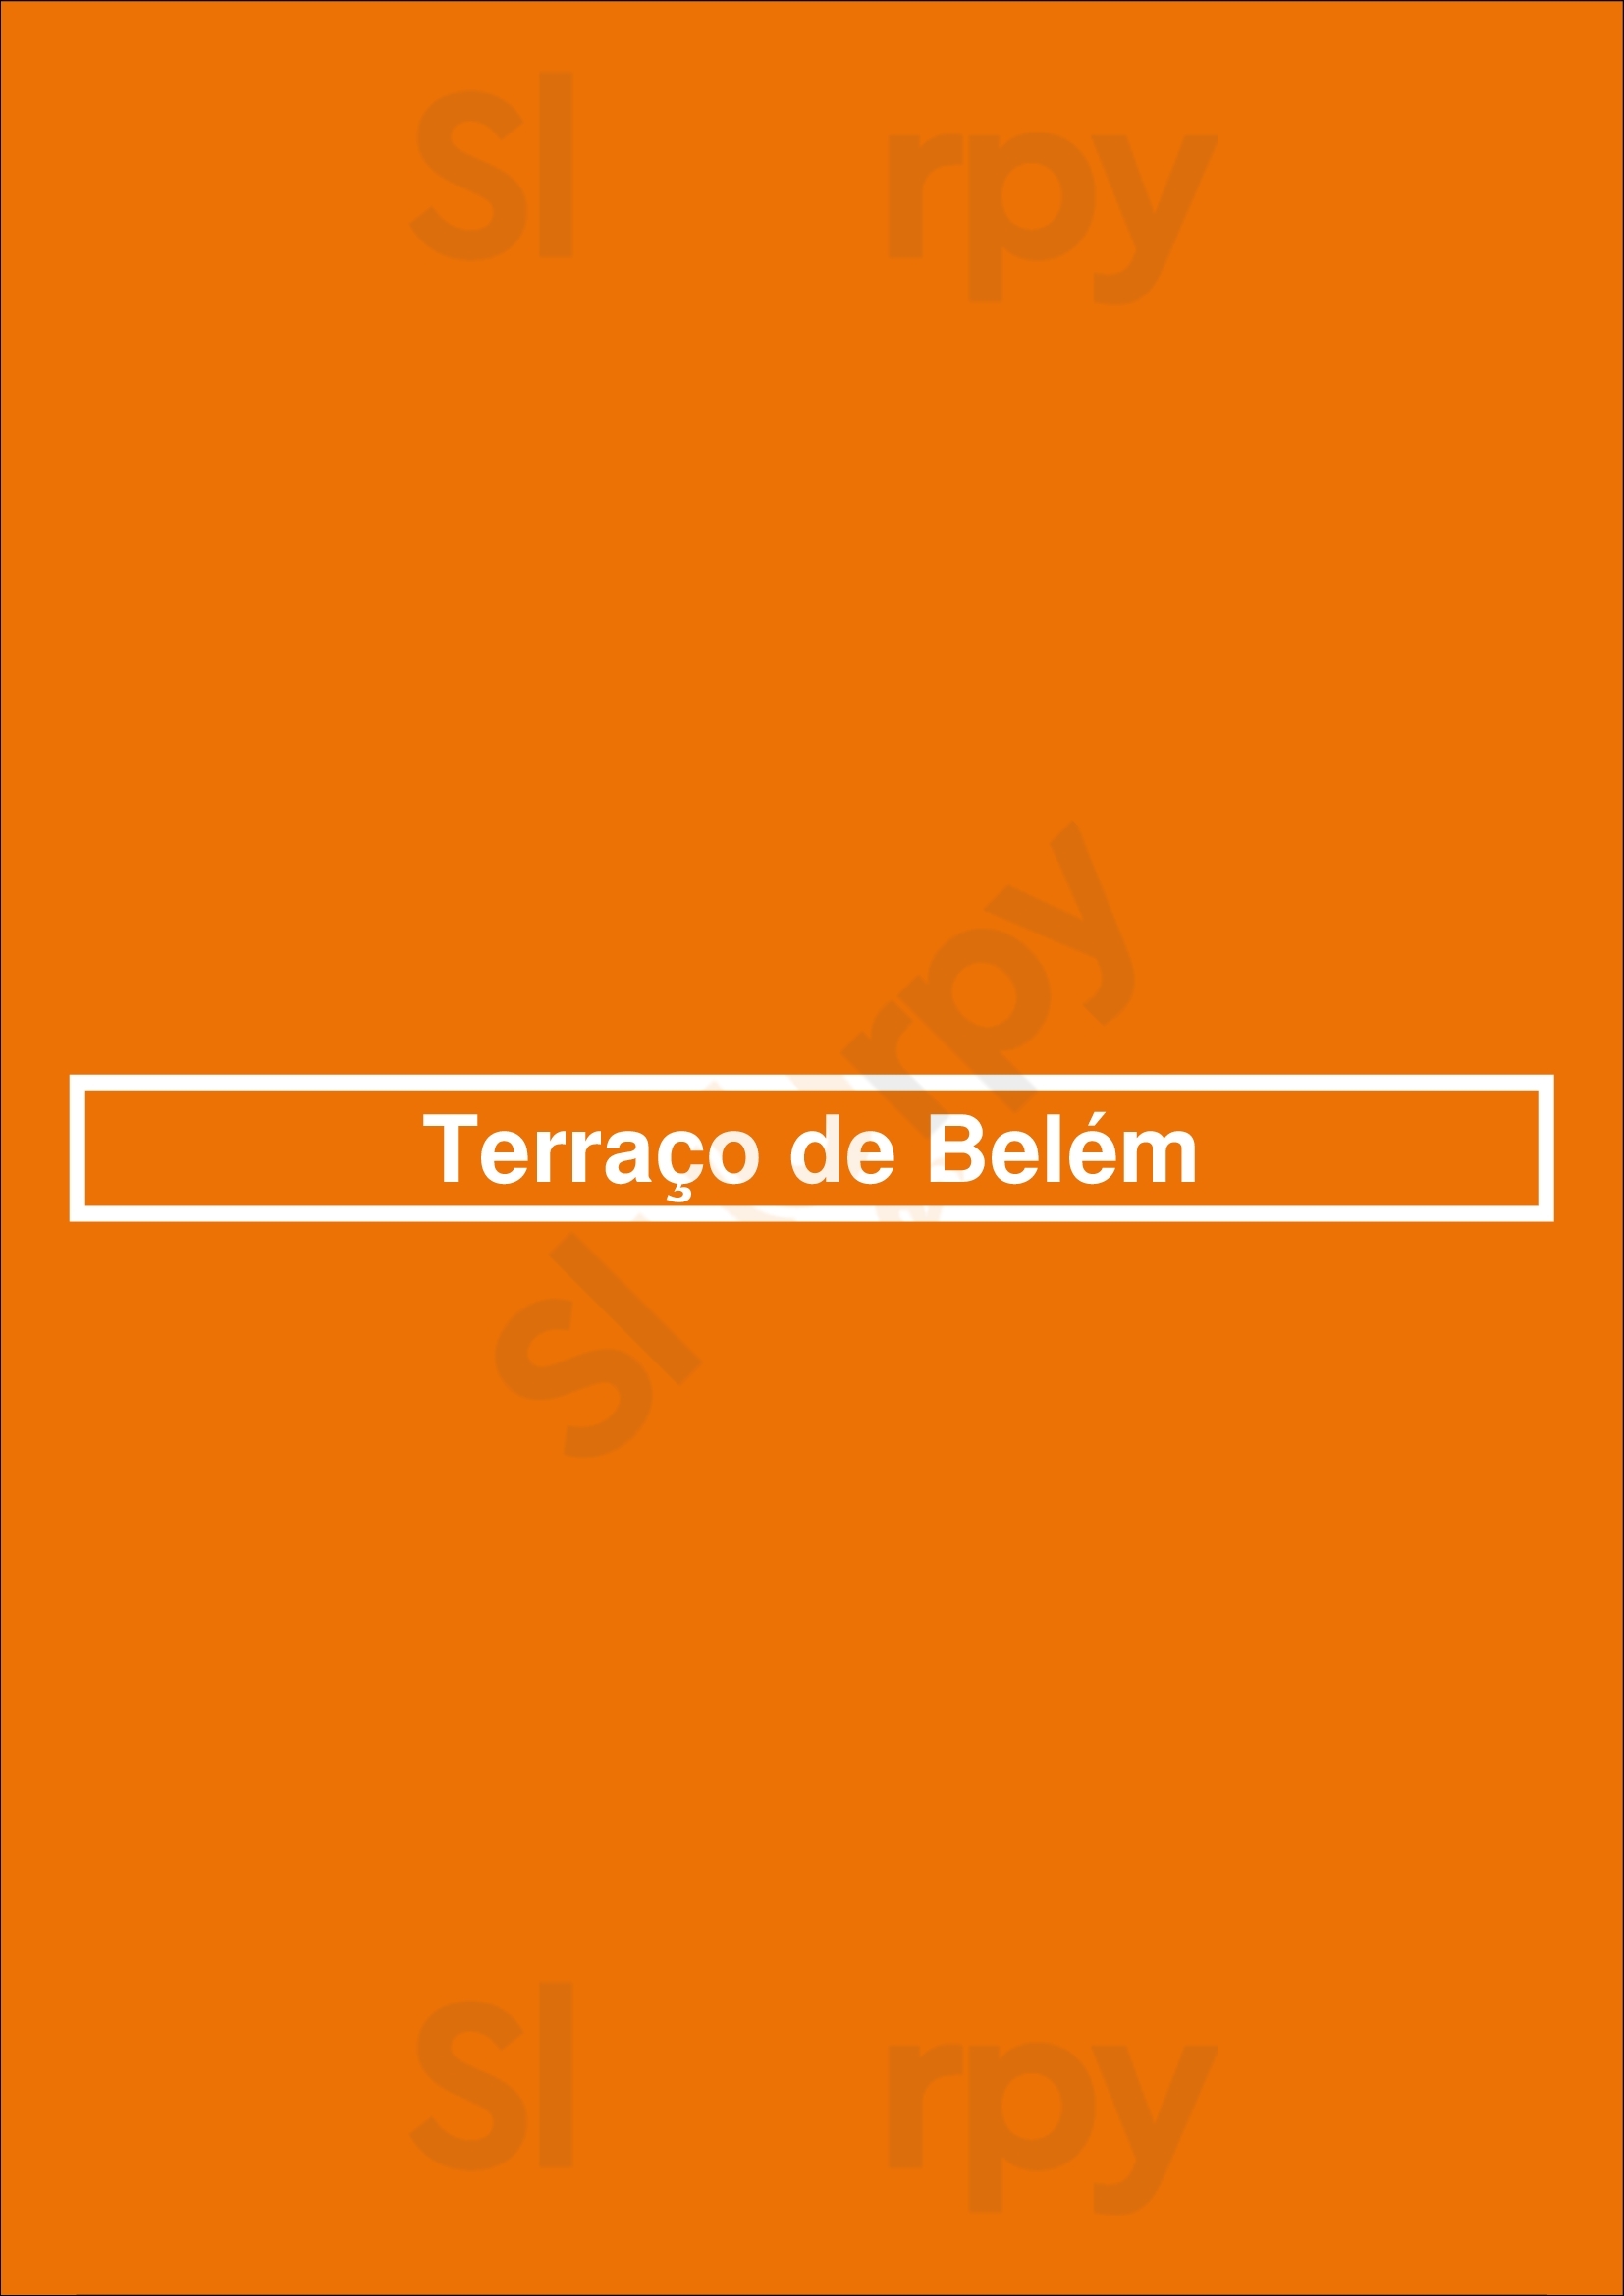 Terraço De Belém Lisboa Menu - 1